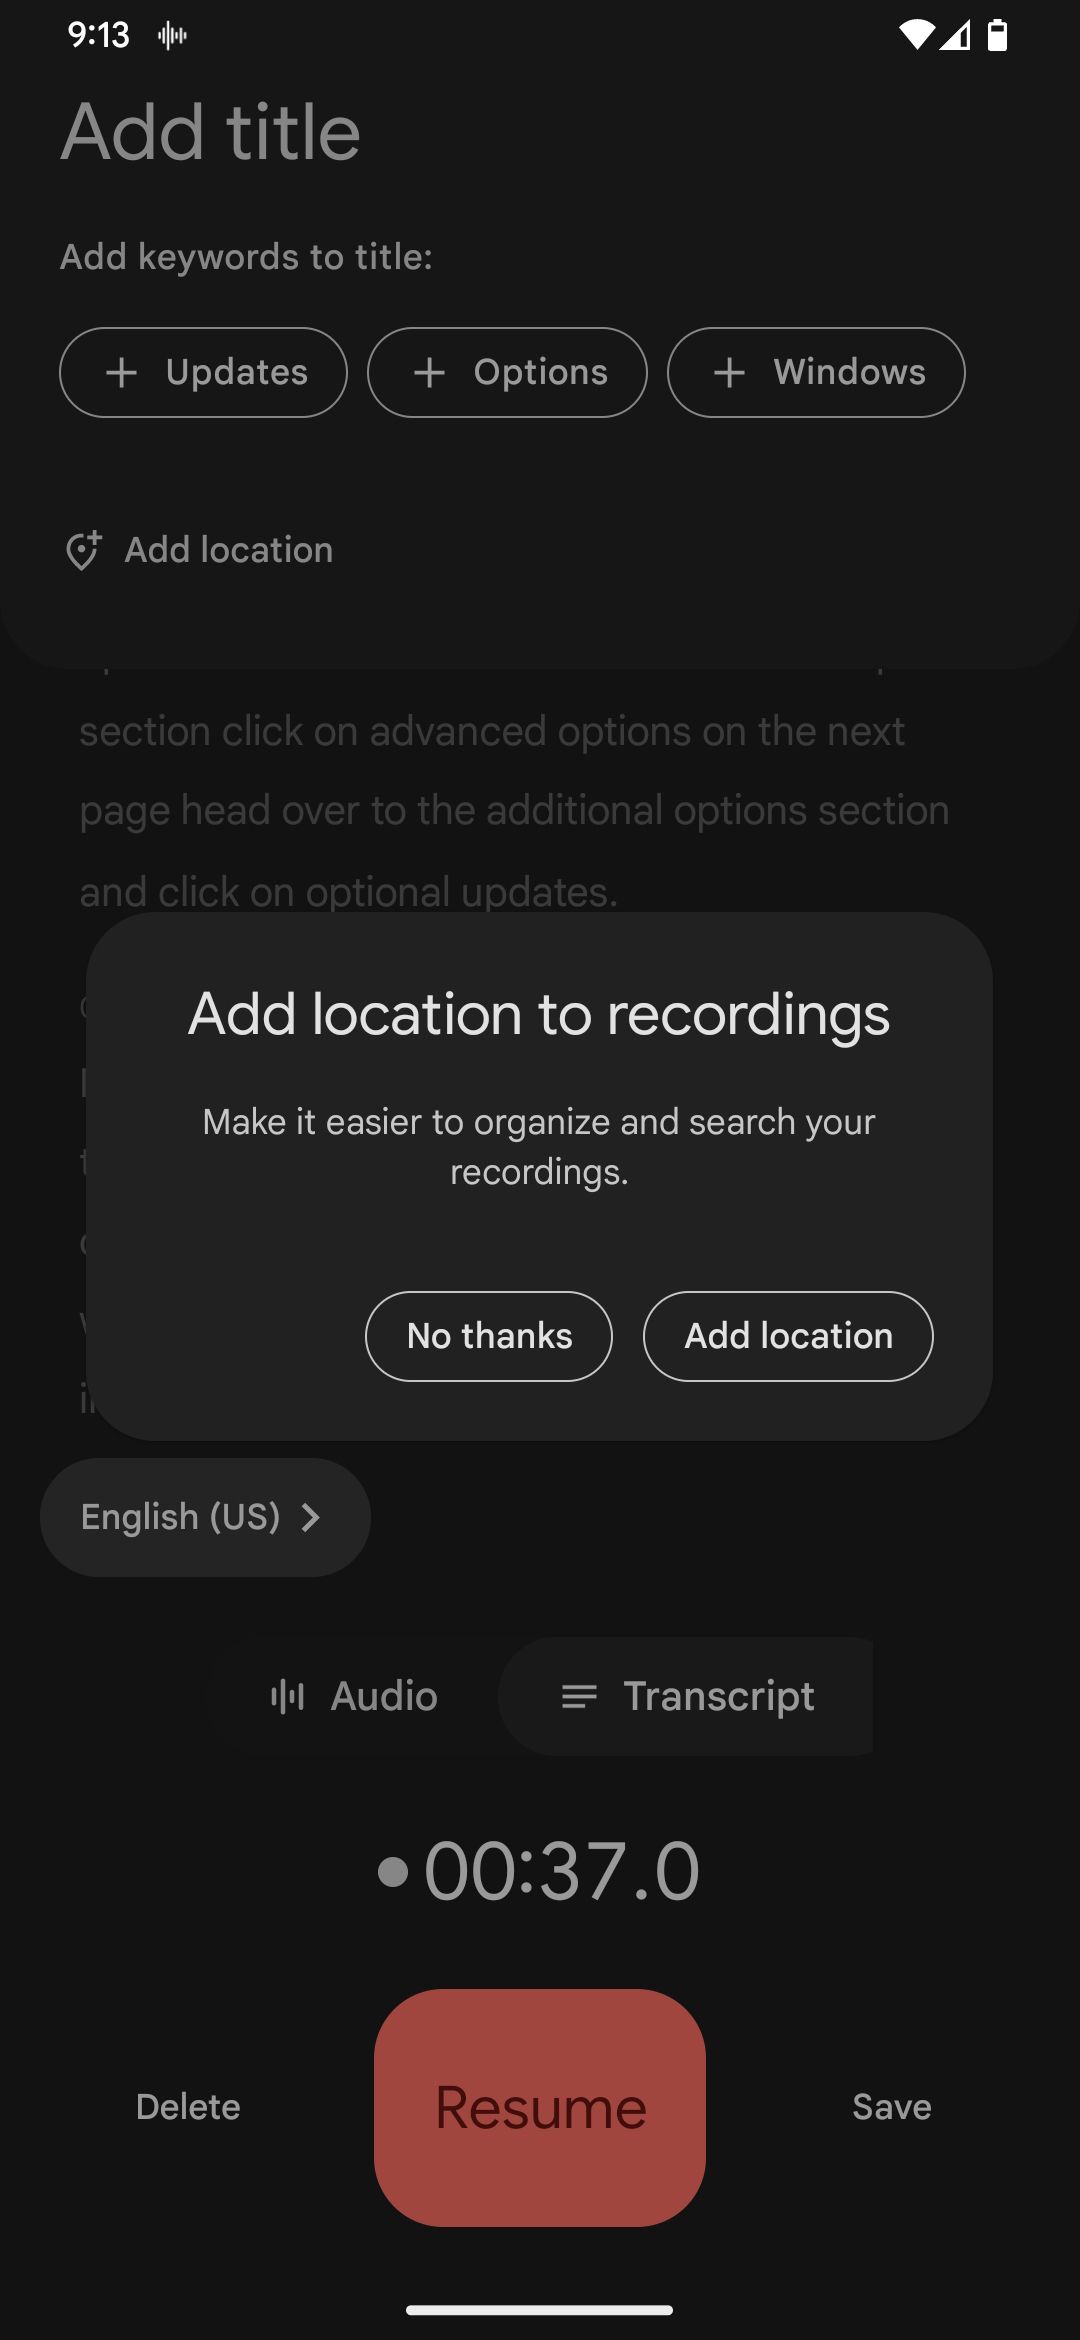 aplicativo gravador do Google adiciona localização ao pop-up de gravações